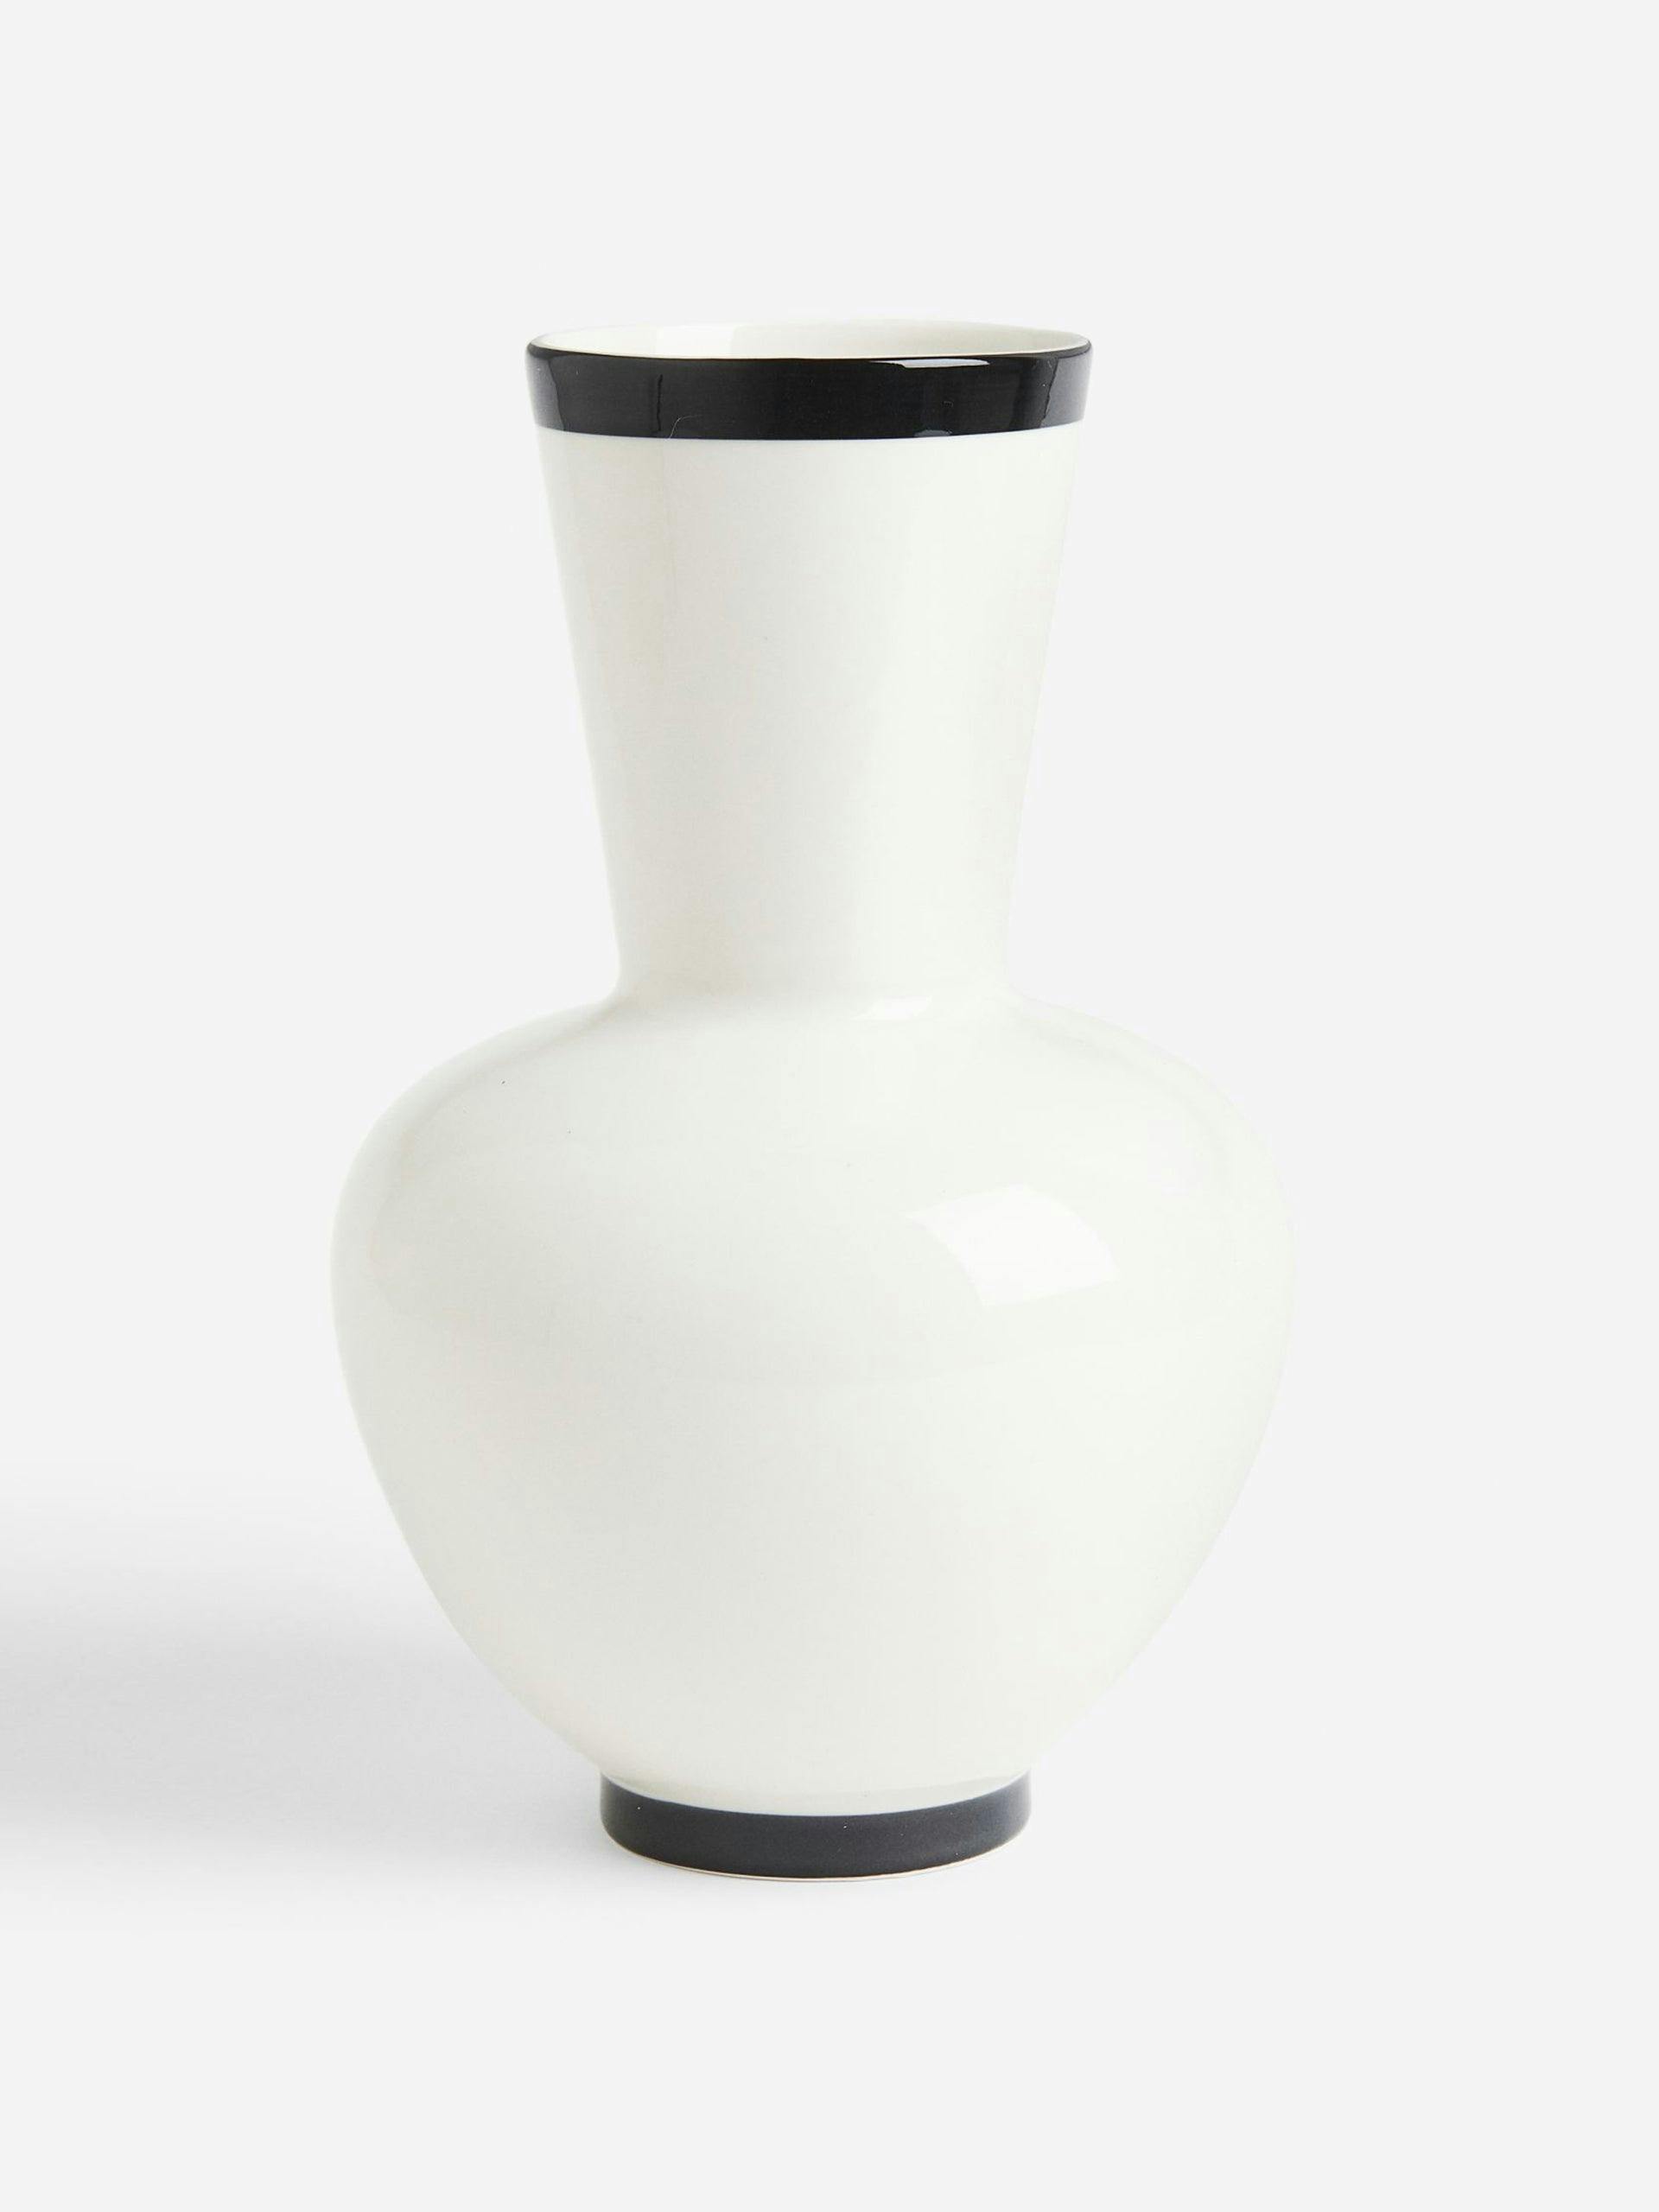 White vase with black band